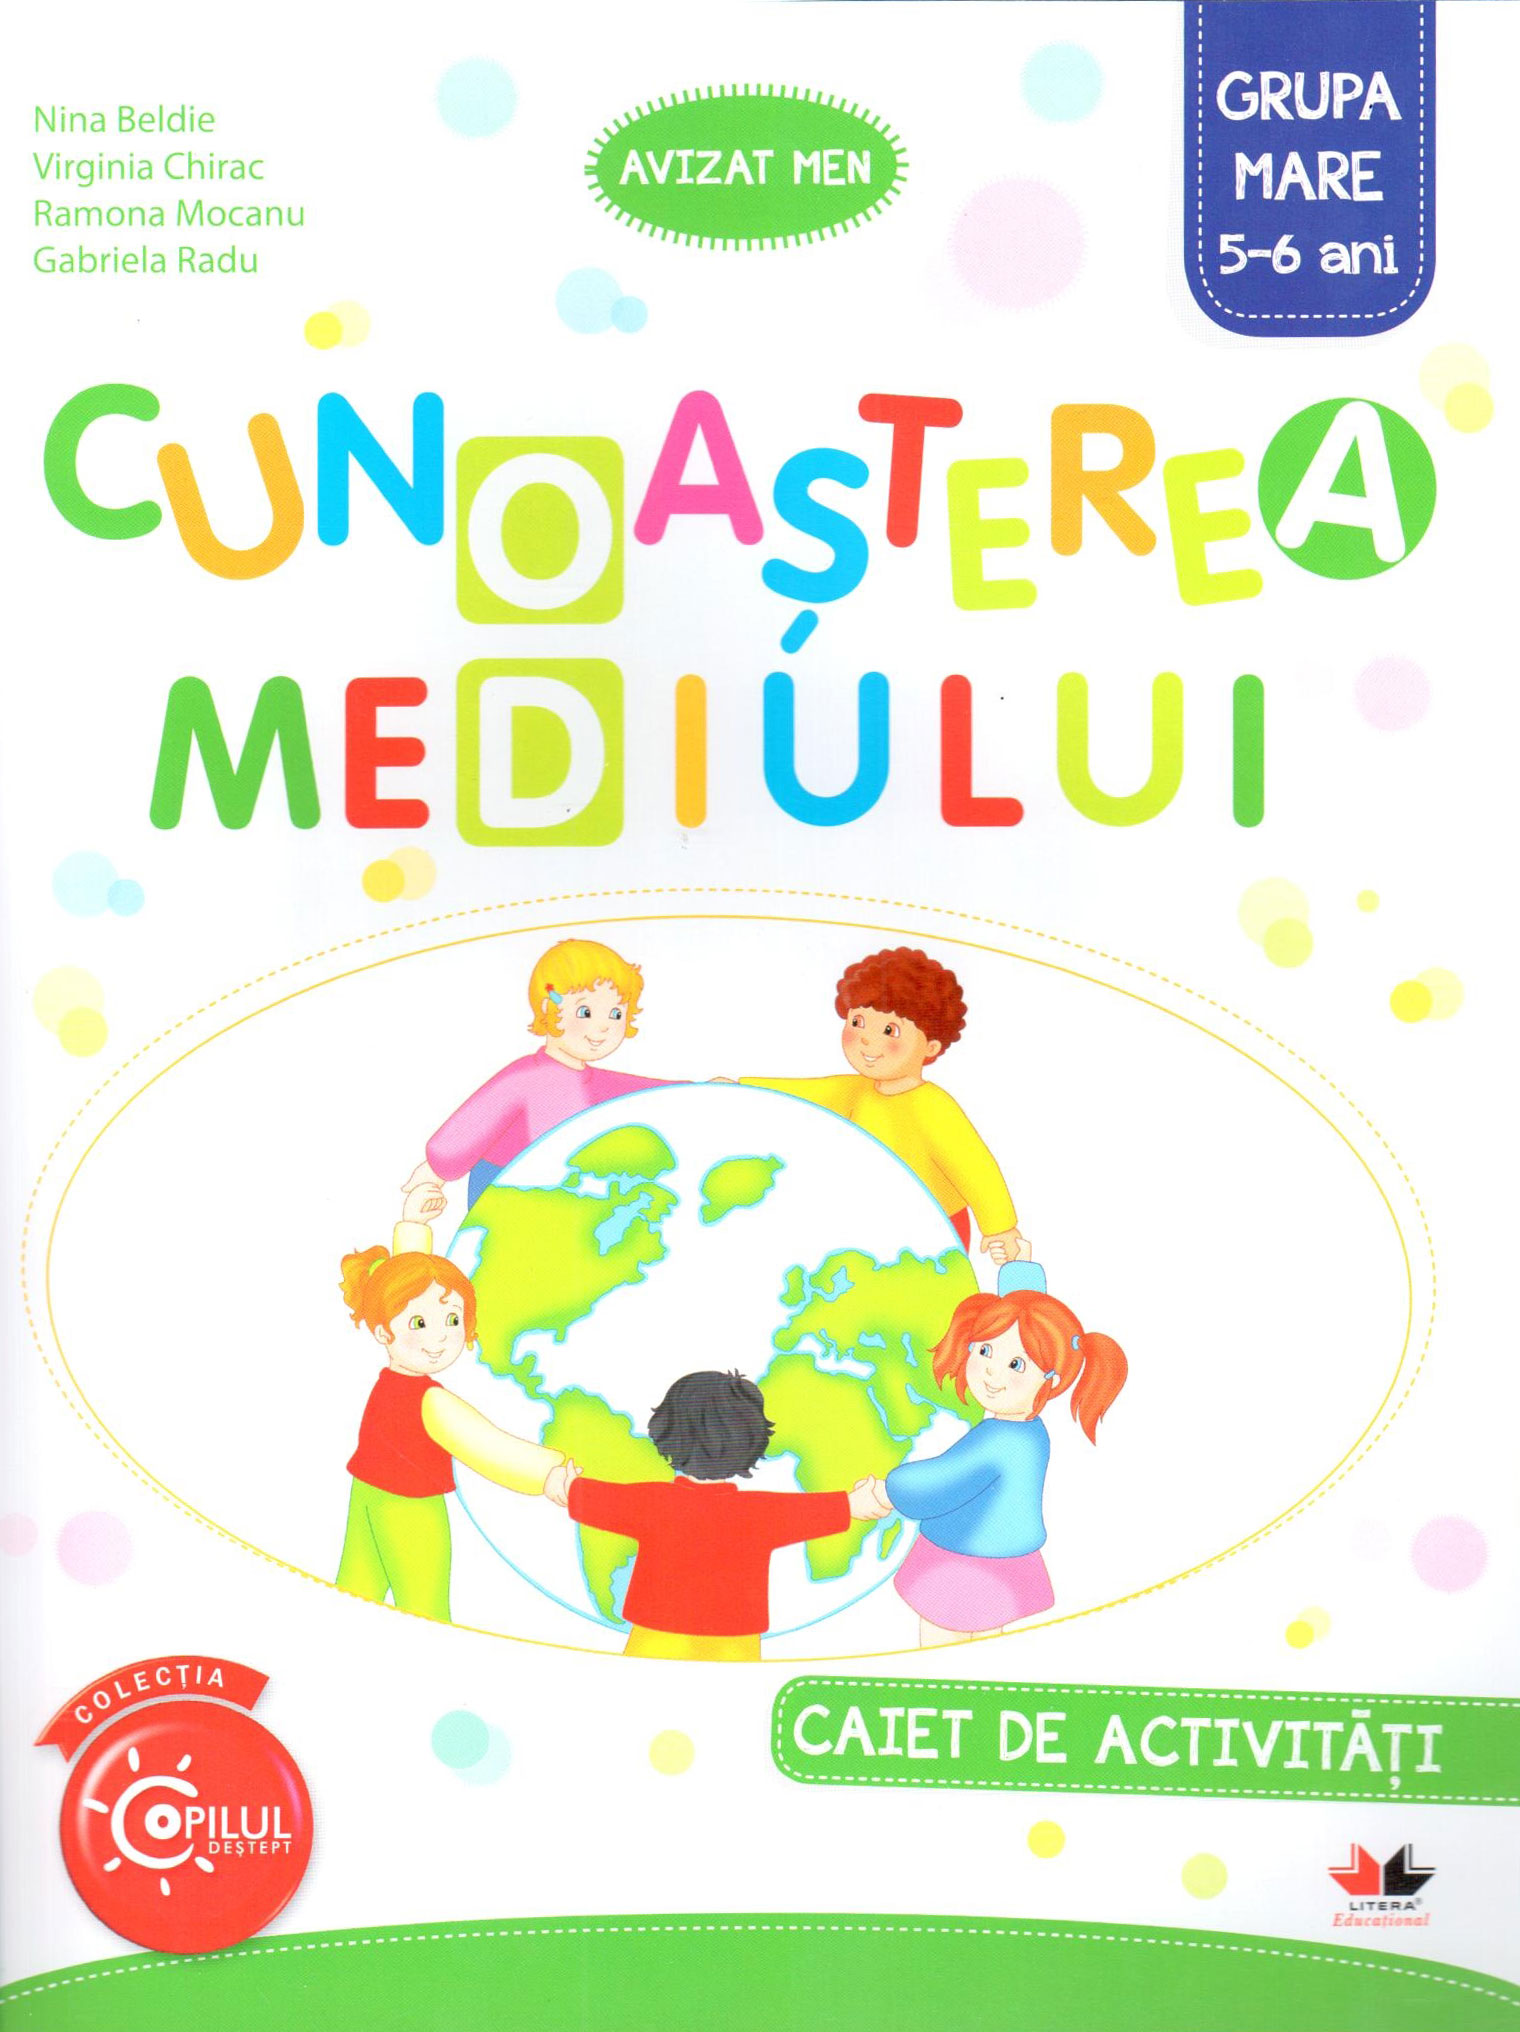 Cunoasterea mediului - Caiet de activitati - Grupa mare 5-6 ani | Nina Beldie, Nina Beldie, Nina Beldie, Gabriela Radu